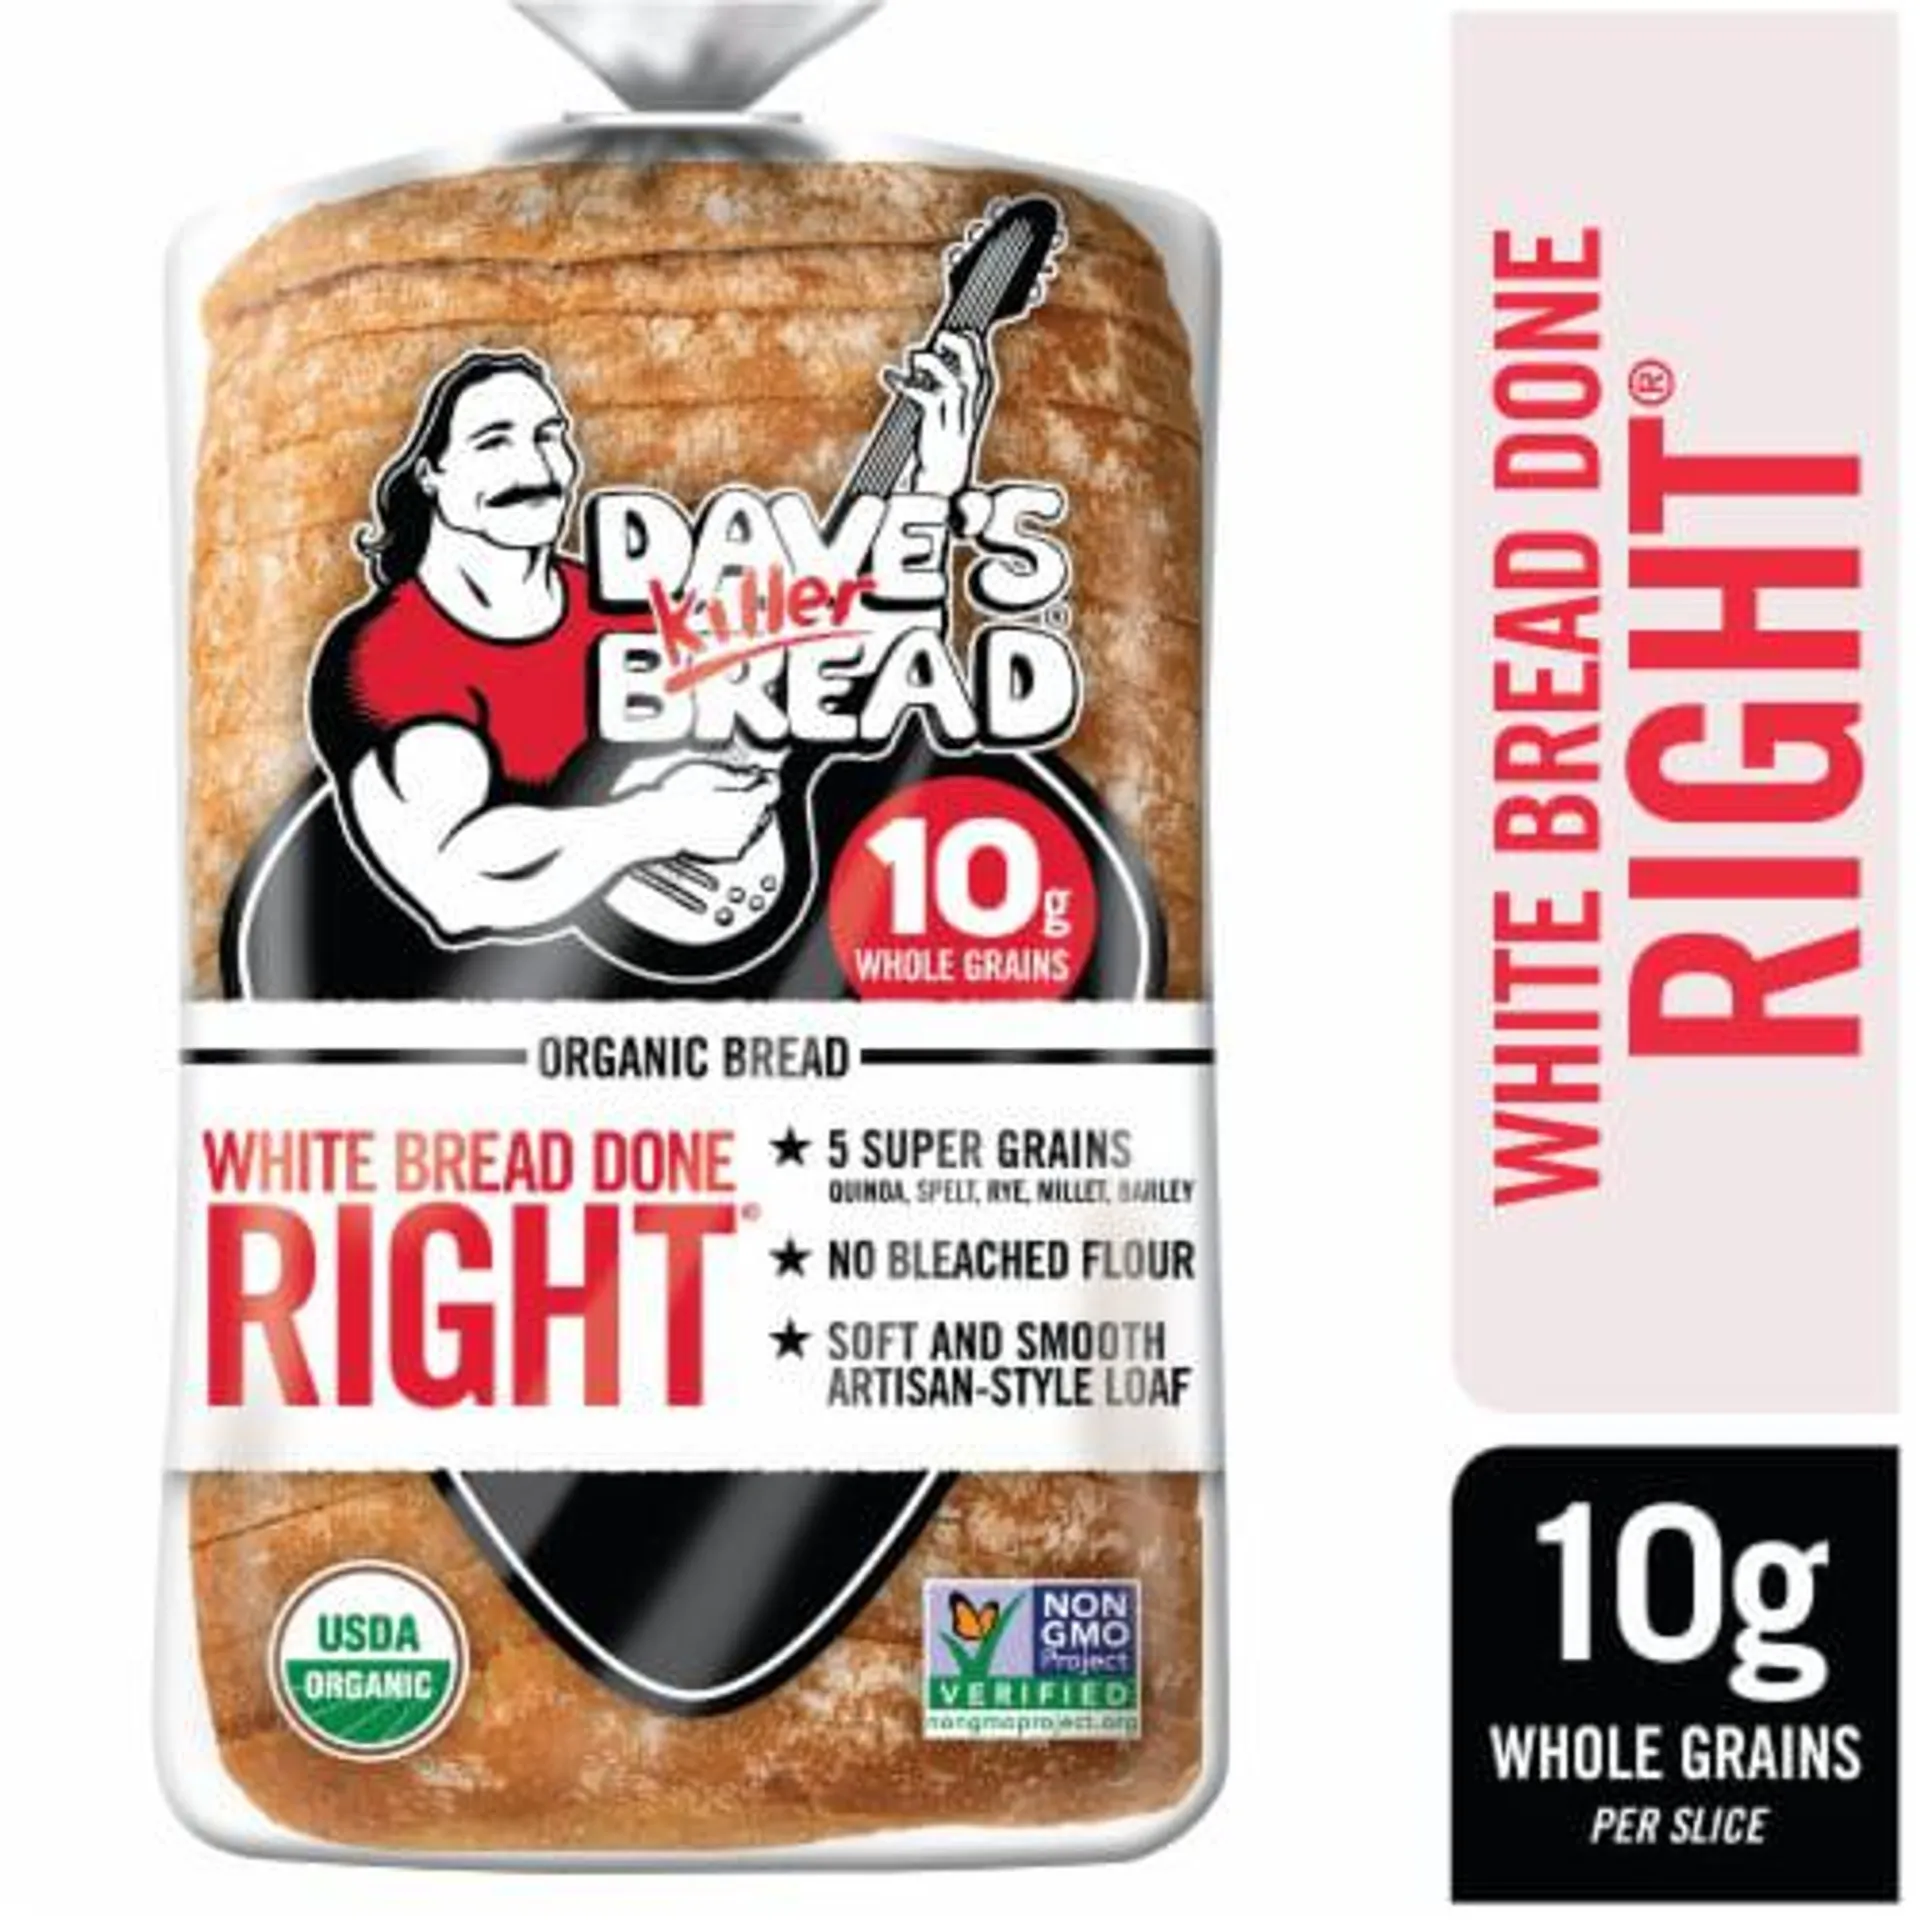 Dave's Killer Bread White Bread Done Right Artisan-Style Organic White Bread